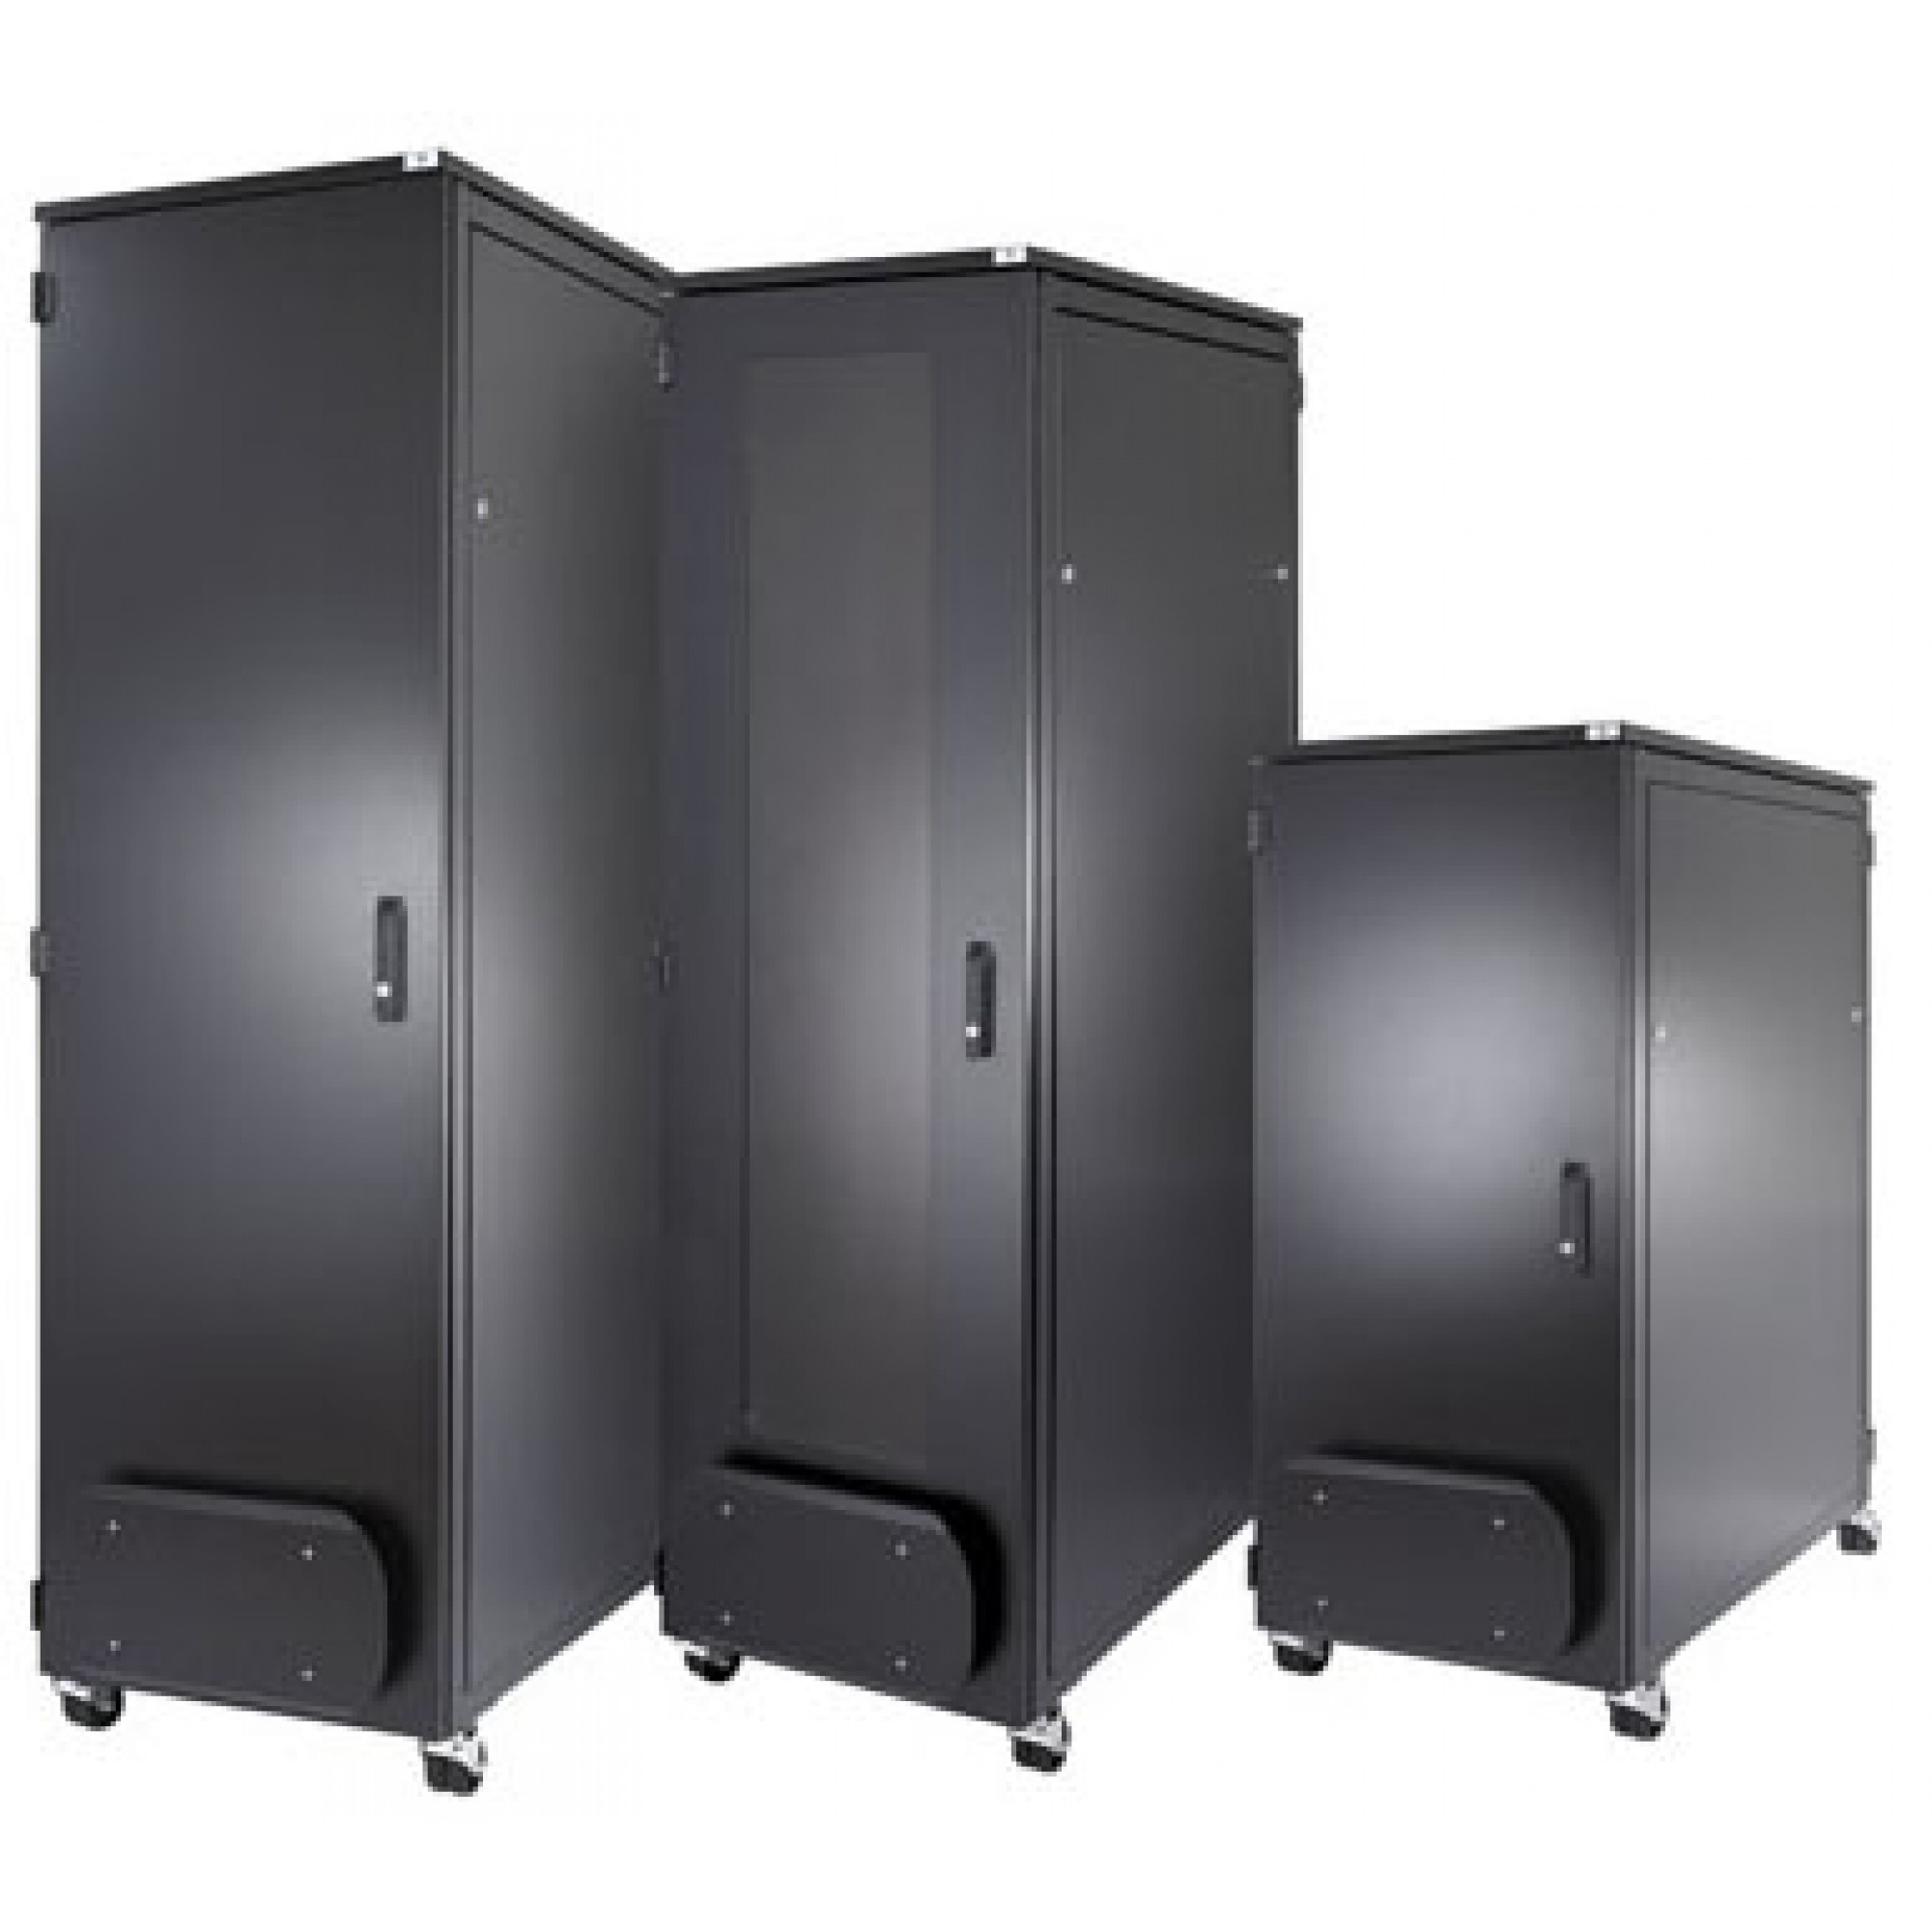 Giới thiệu tủ rack 42U - Rack Cabinet 42U-600